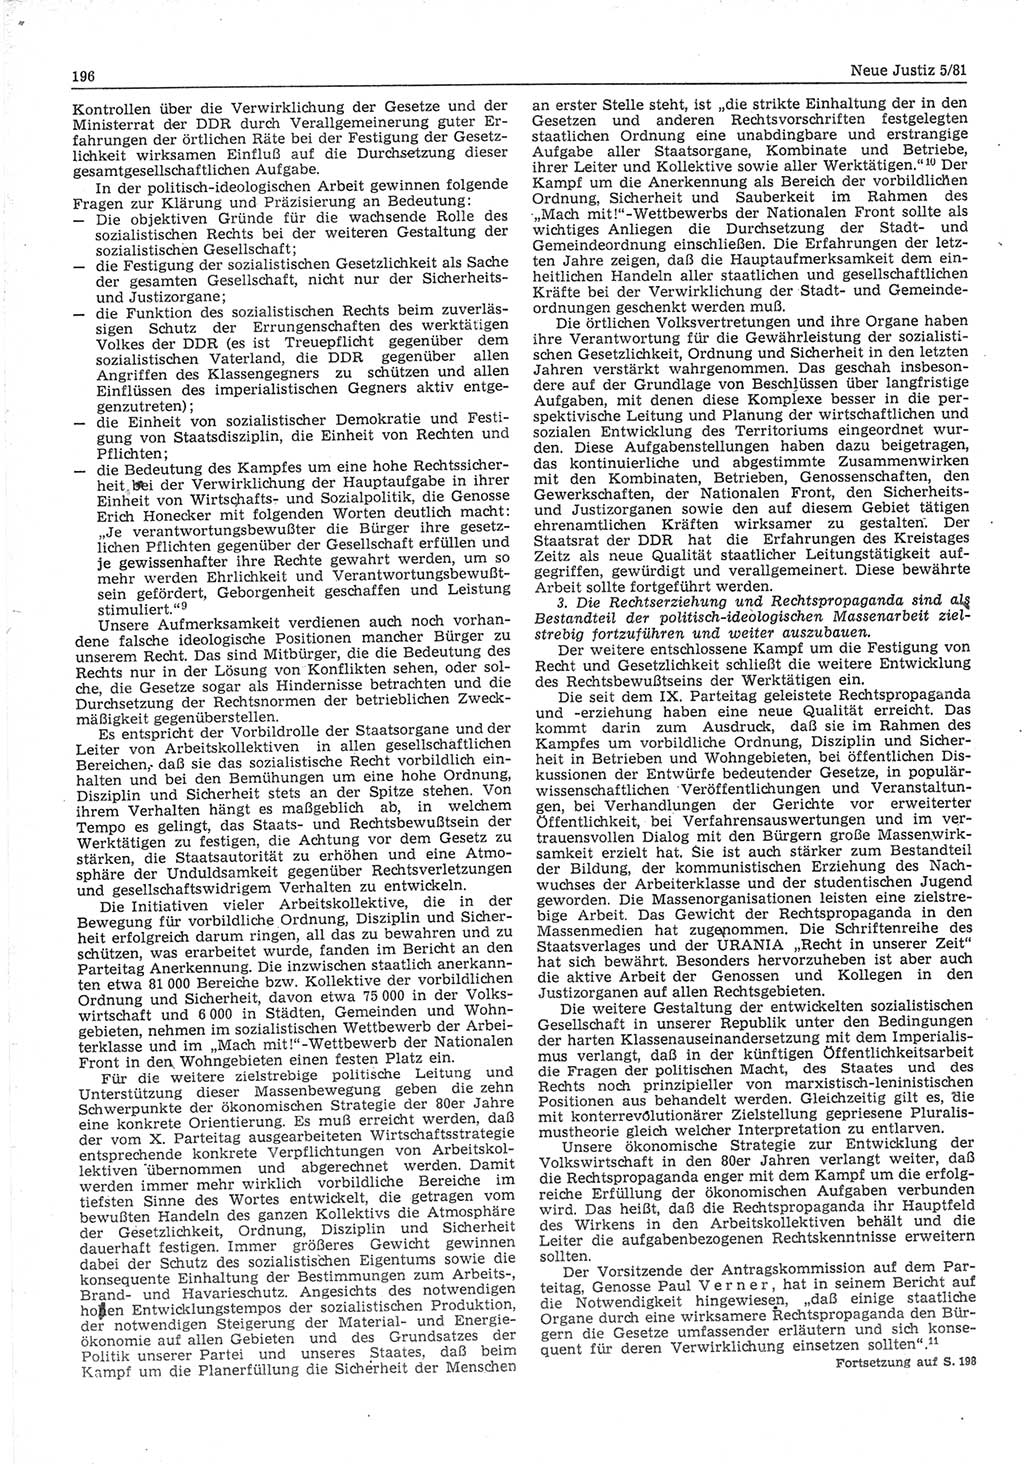 Neue Justiz (NJ), Zeitschrift für sozialistisches Recht und Gesetzlichkeit [Deutsche Demokratische Republik (DDR)], 35. Jahrgang 1981, Seite 196 (NJ DDR 1981, S. 196)